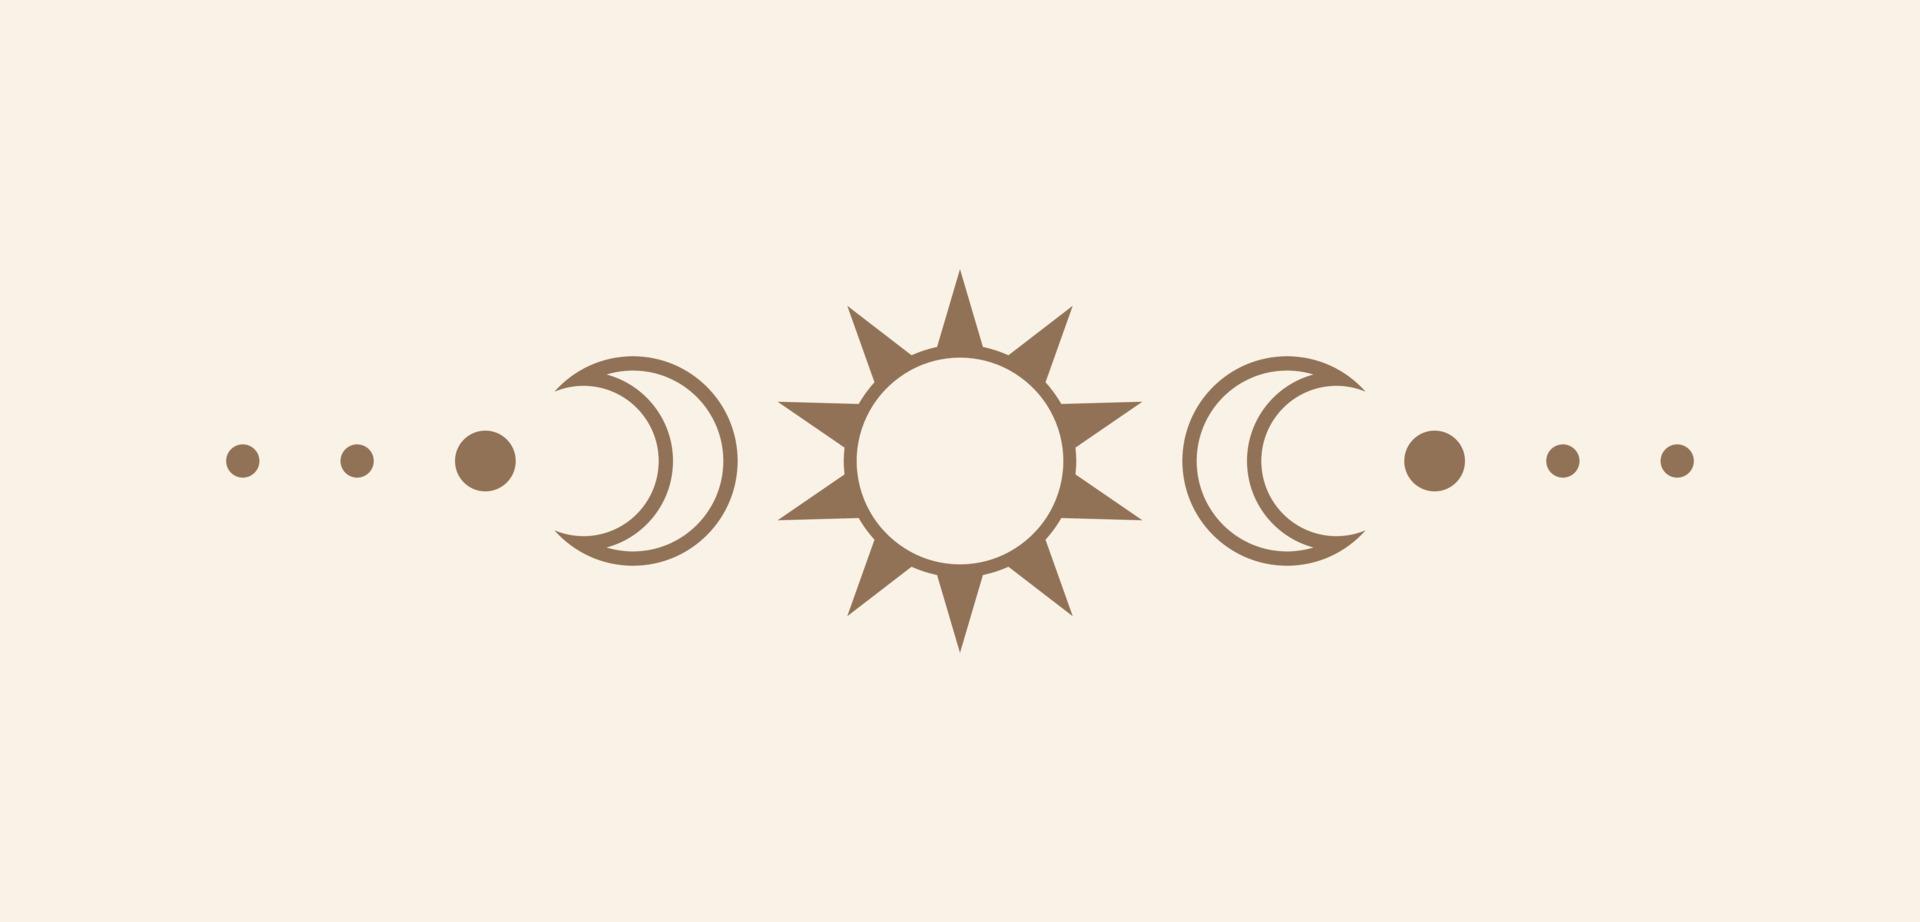 celestial texto divisor com sol, estrelas, lua fases, crescentes. ornamentado boho místico separador decorativo elemento vetor